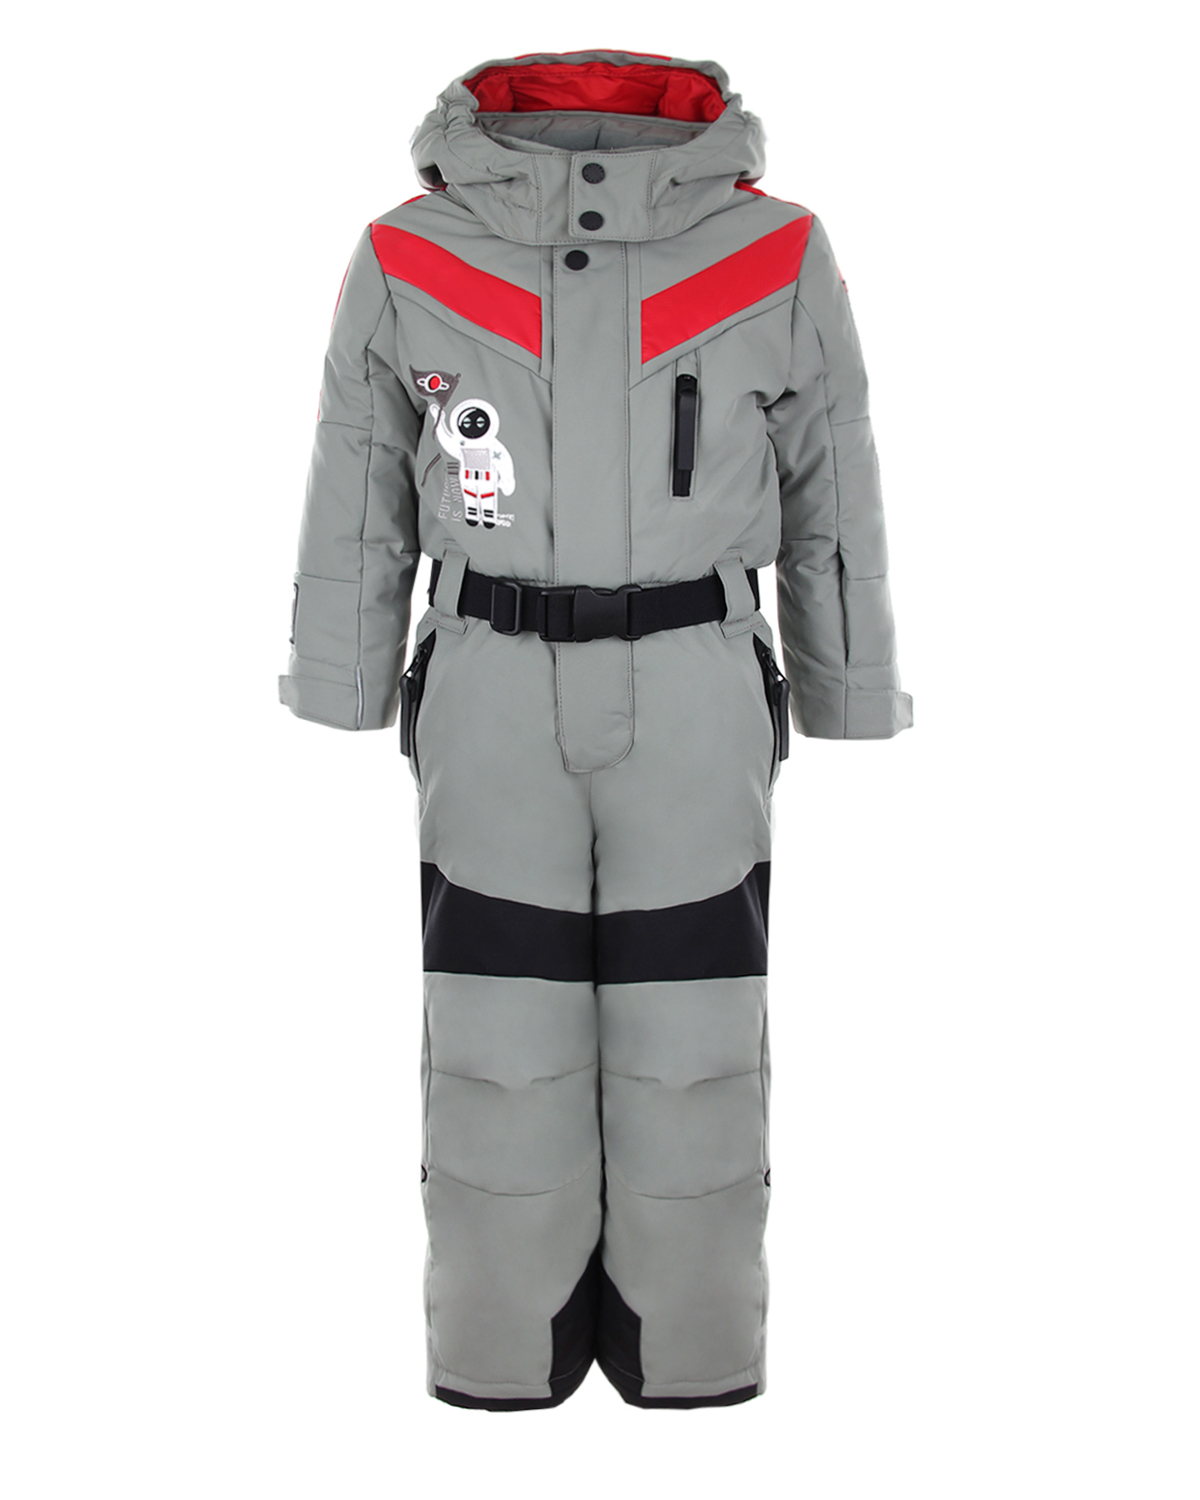 Комбинезон с патчами "космос" Poivre Blanc детский, размер 92, цвет хаки